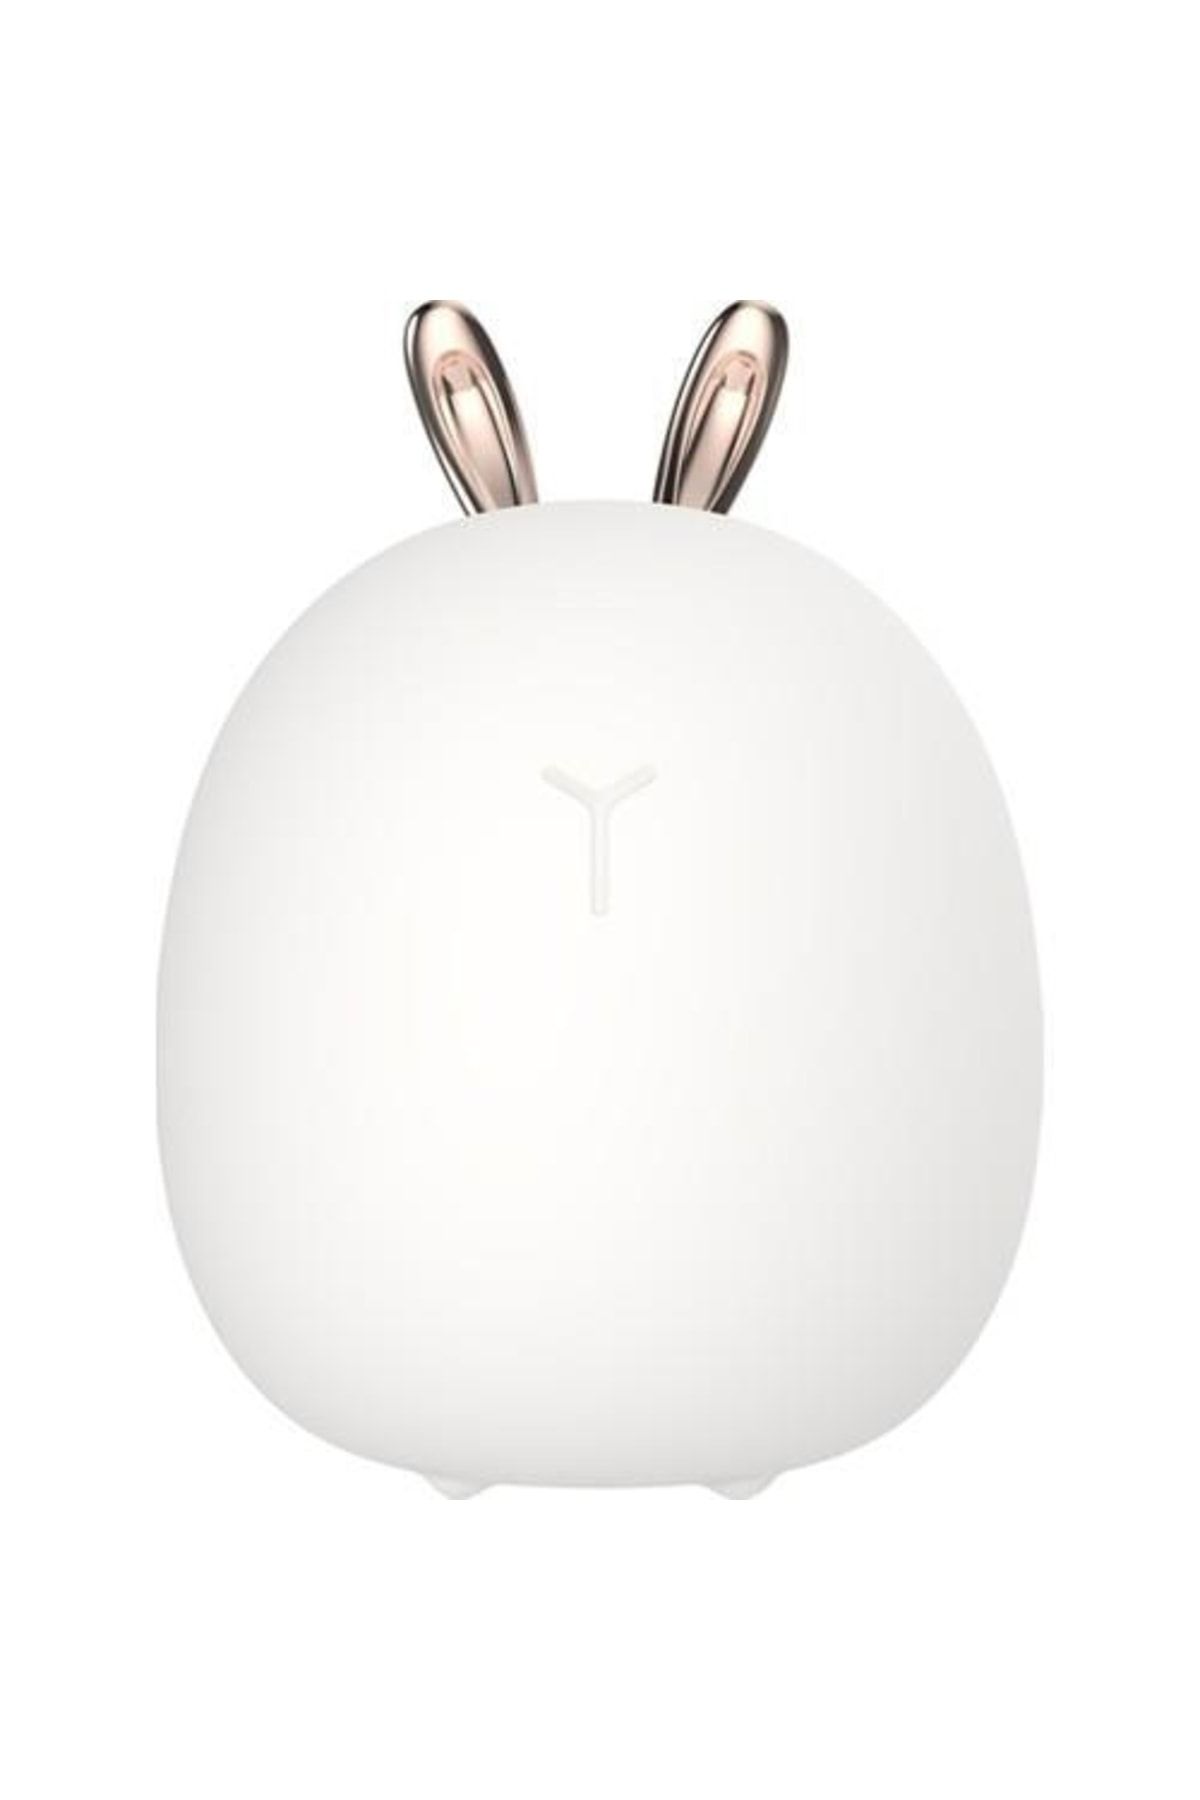 Schulzz Tavşan Kulaklı Model Beyaz Işık 3 Kademeli Silikonlu Gece Lambası